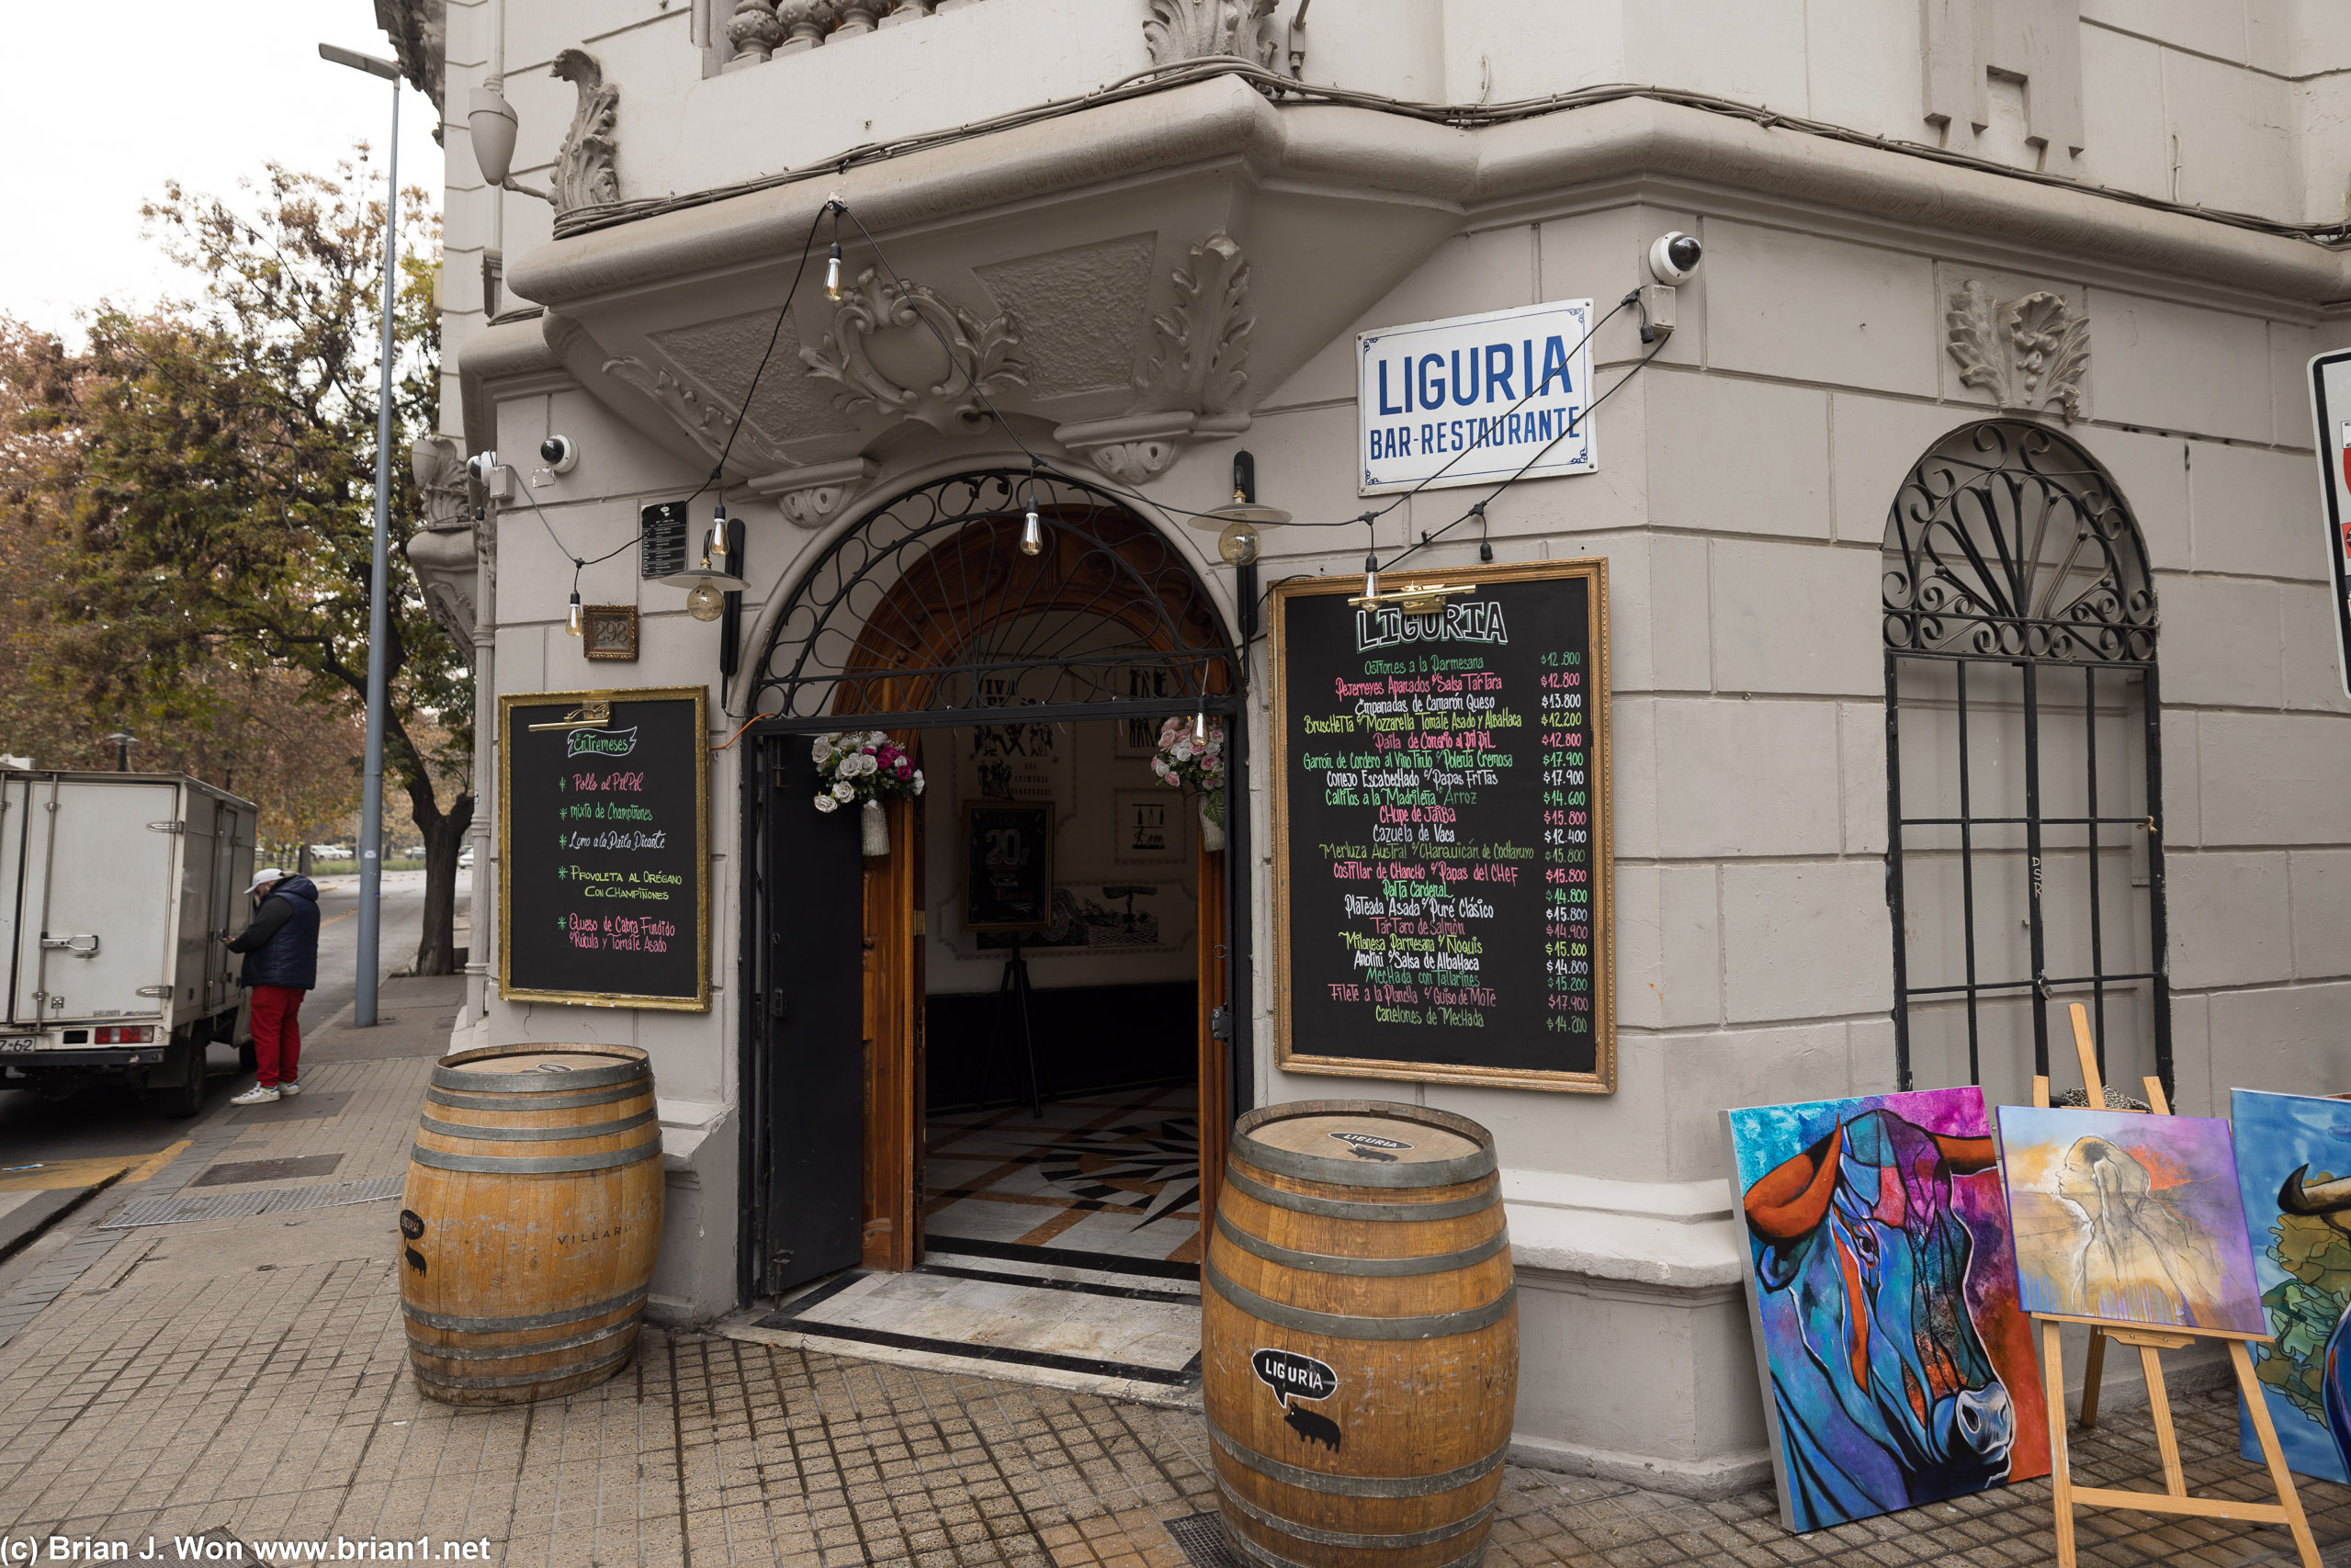 Liguria Bar Restaurante.